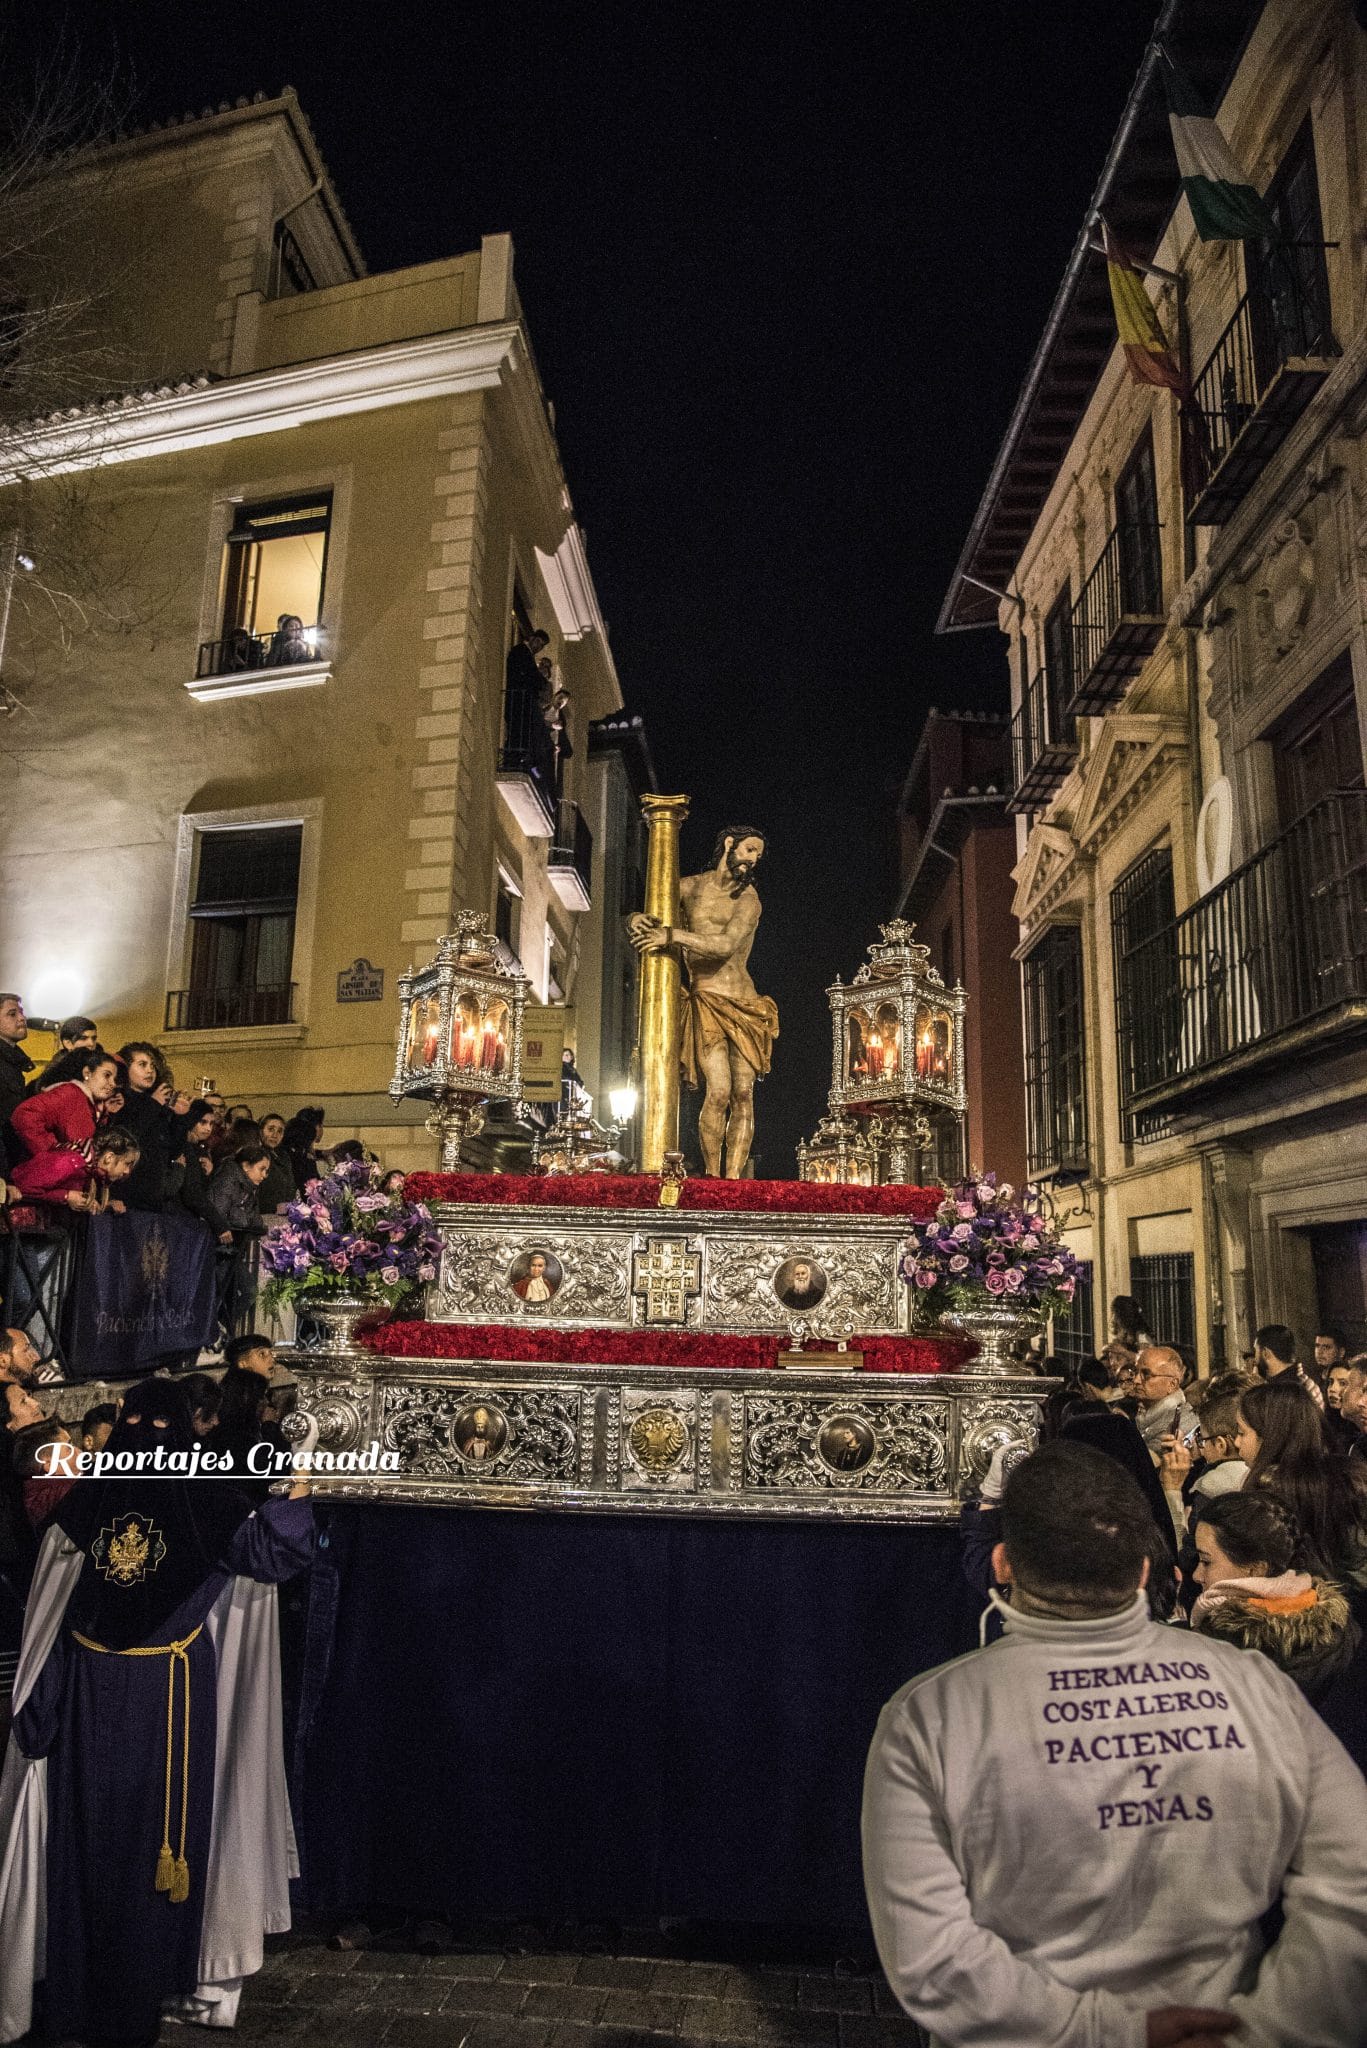 Semana Santa Granada - Paciencia y Penas